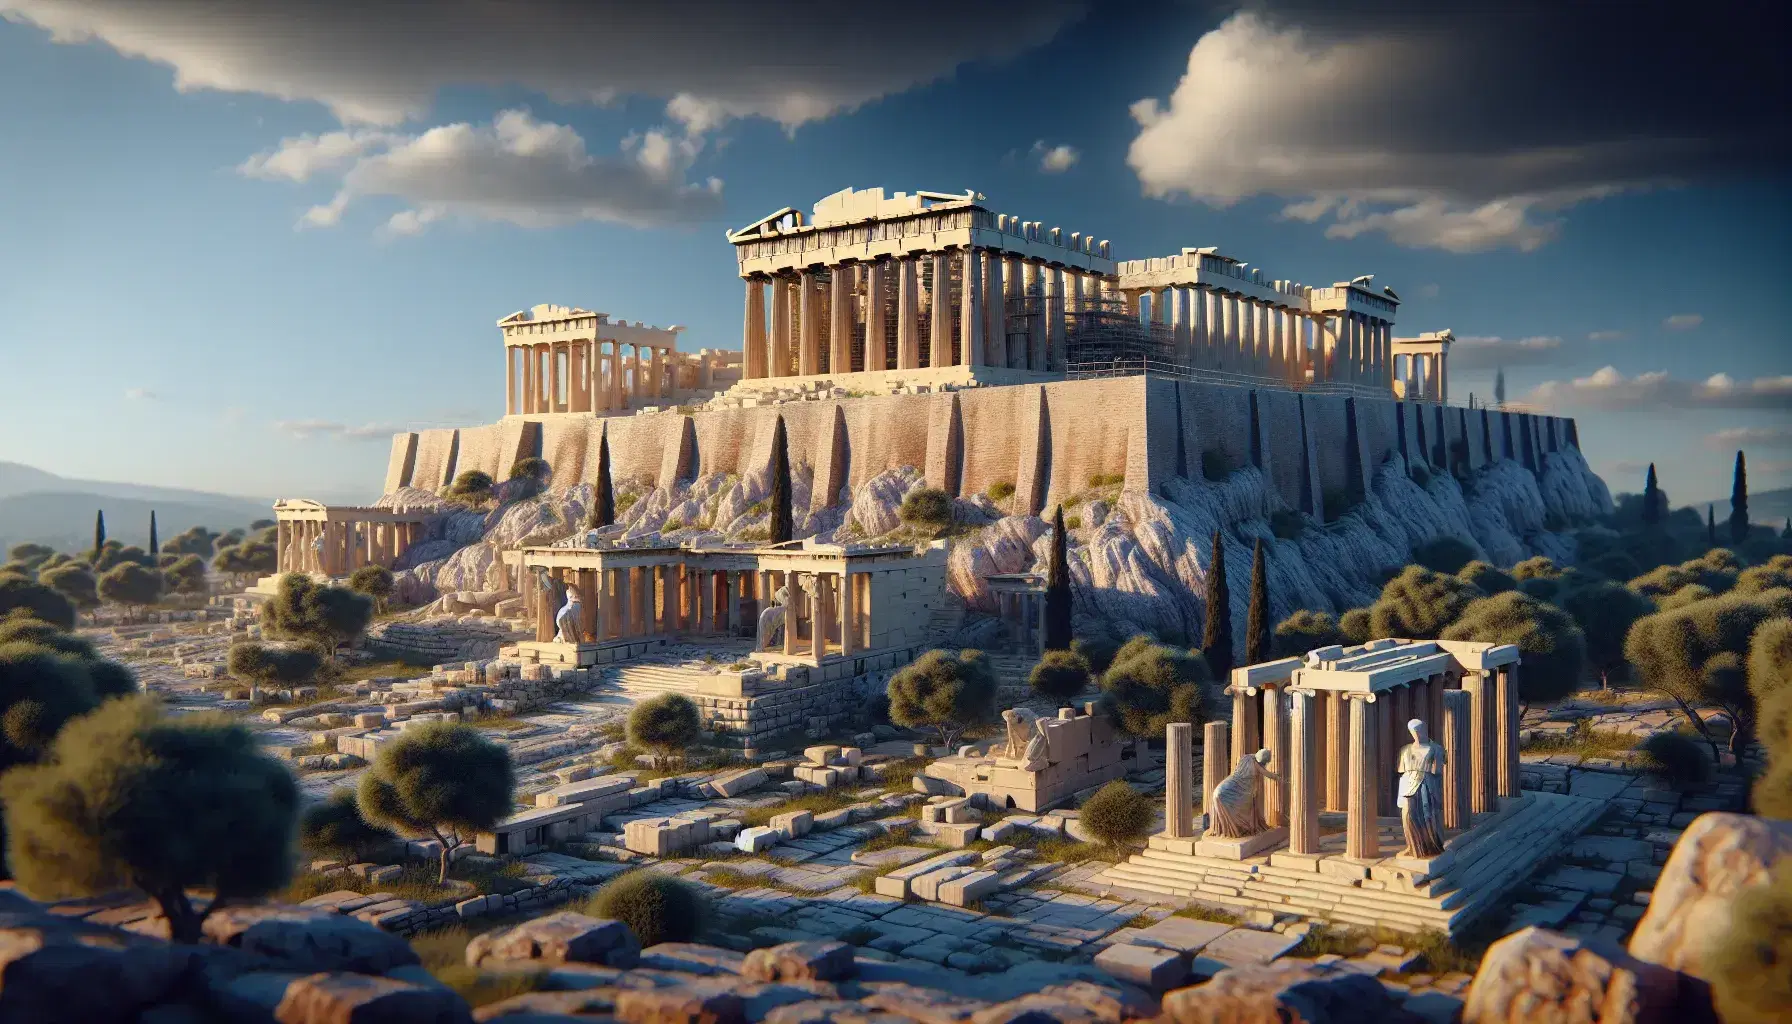 Reconstrucción tridimensional de la Acrópolis de Atenas destacando el Partenón con columnas dóricas y el Erechtheion con Cariátides bajo un cielo azul.